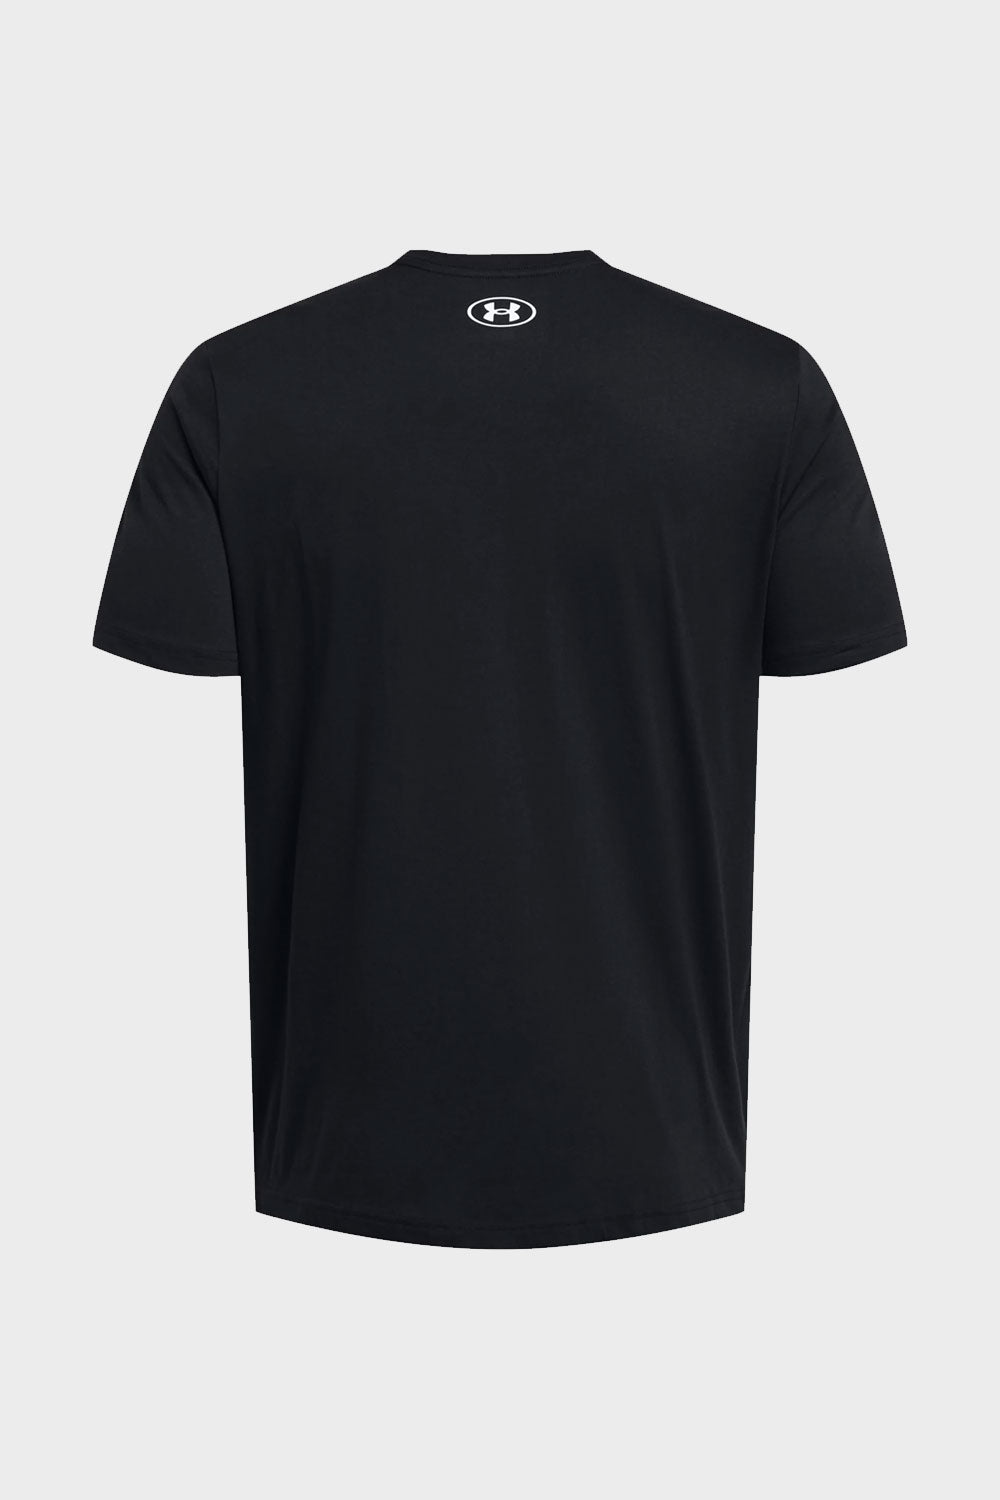 אנדר ארמור חולצת טישירט קצרה בצבע שחור לגברים